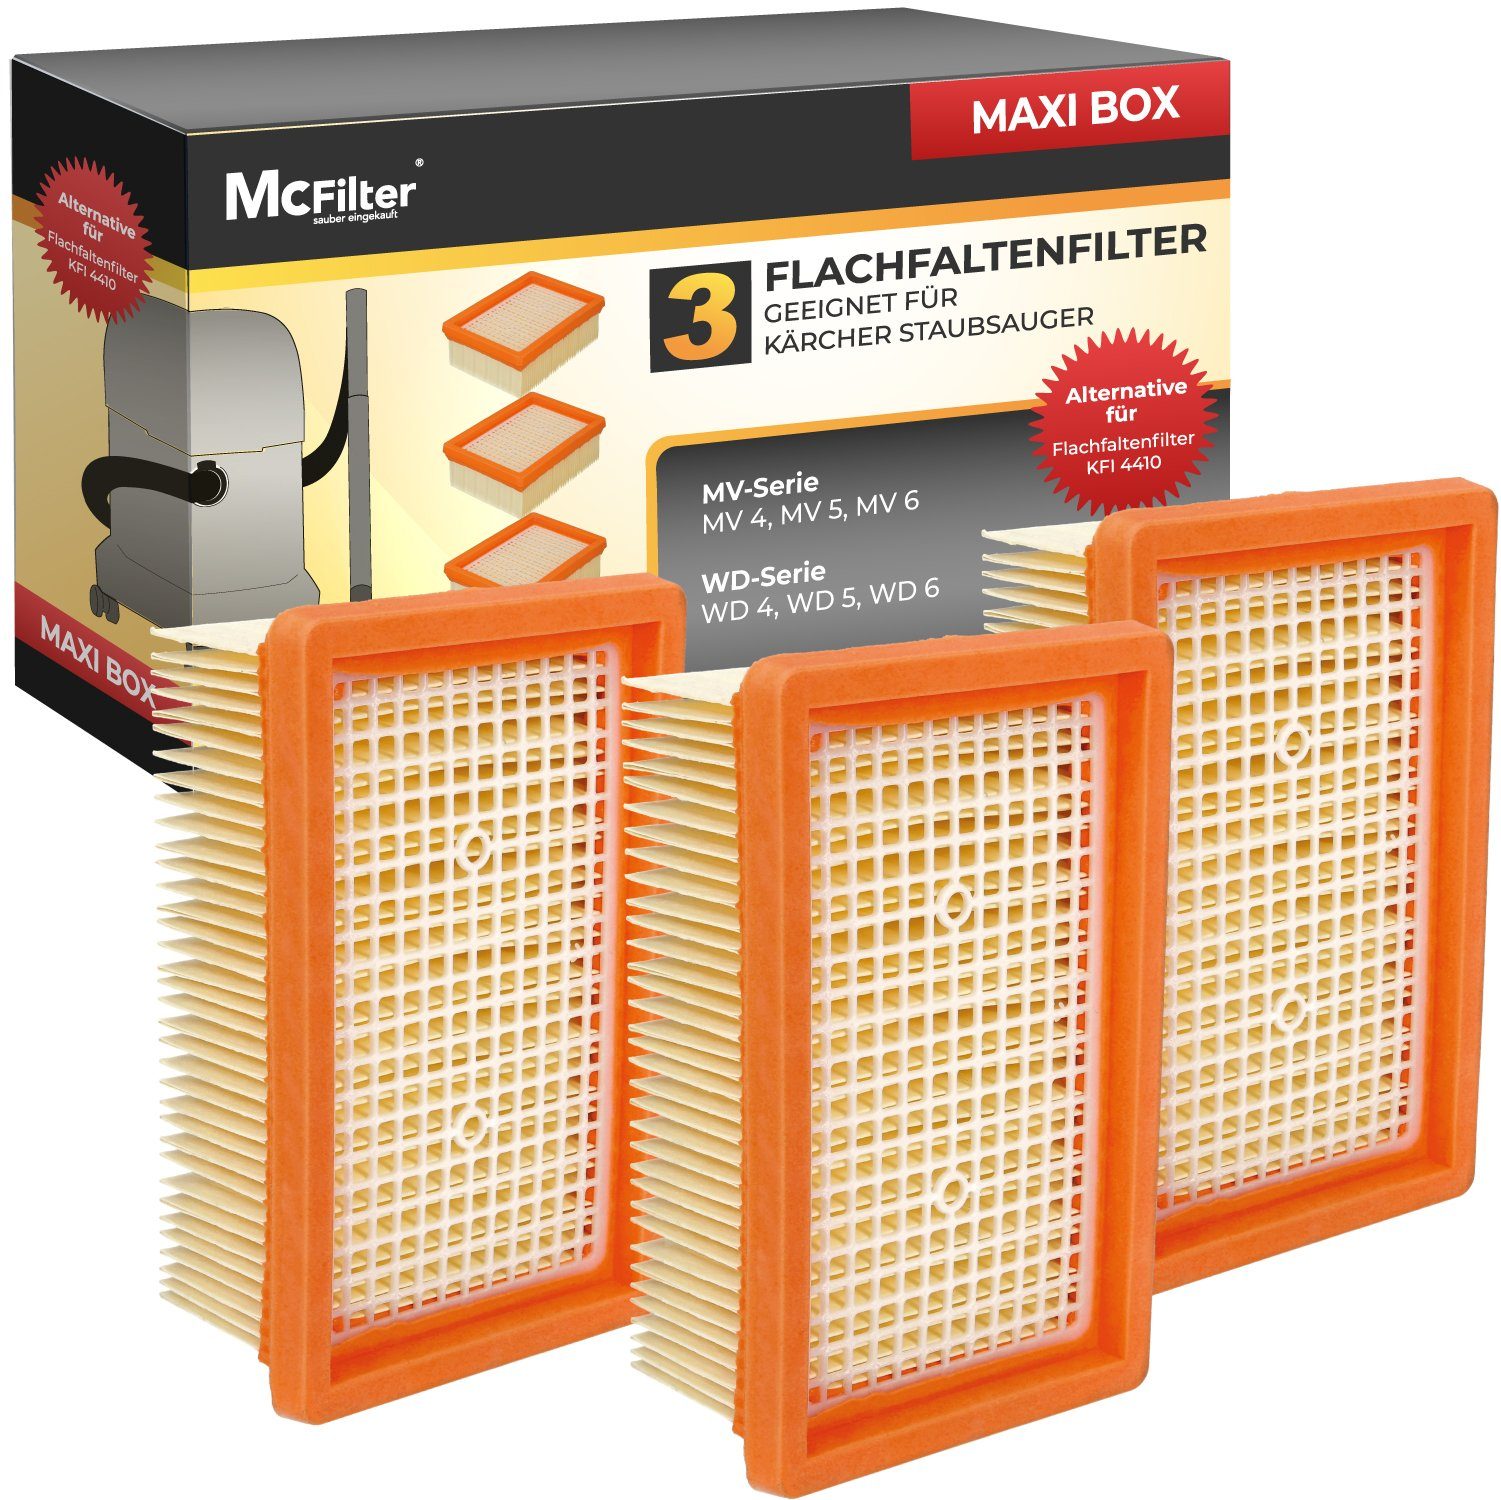 McFilter Ersatzfilter (3 Stück) Lamellenfilter Filter geeignet, Alternative für Kärcher Filter 2.863-005.0